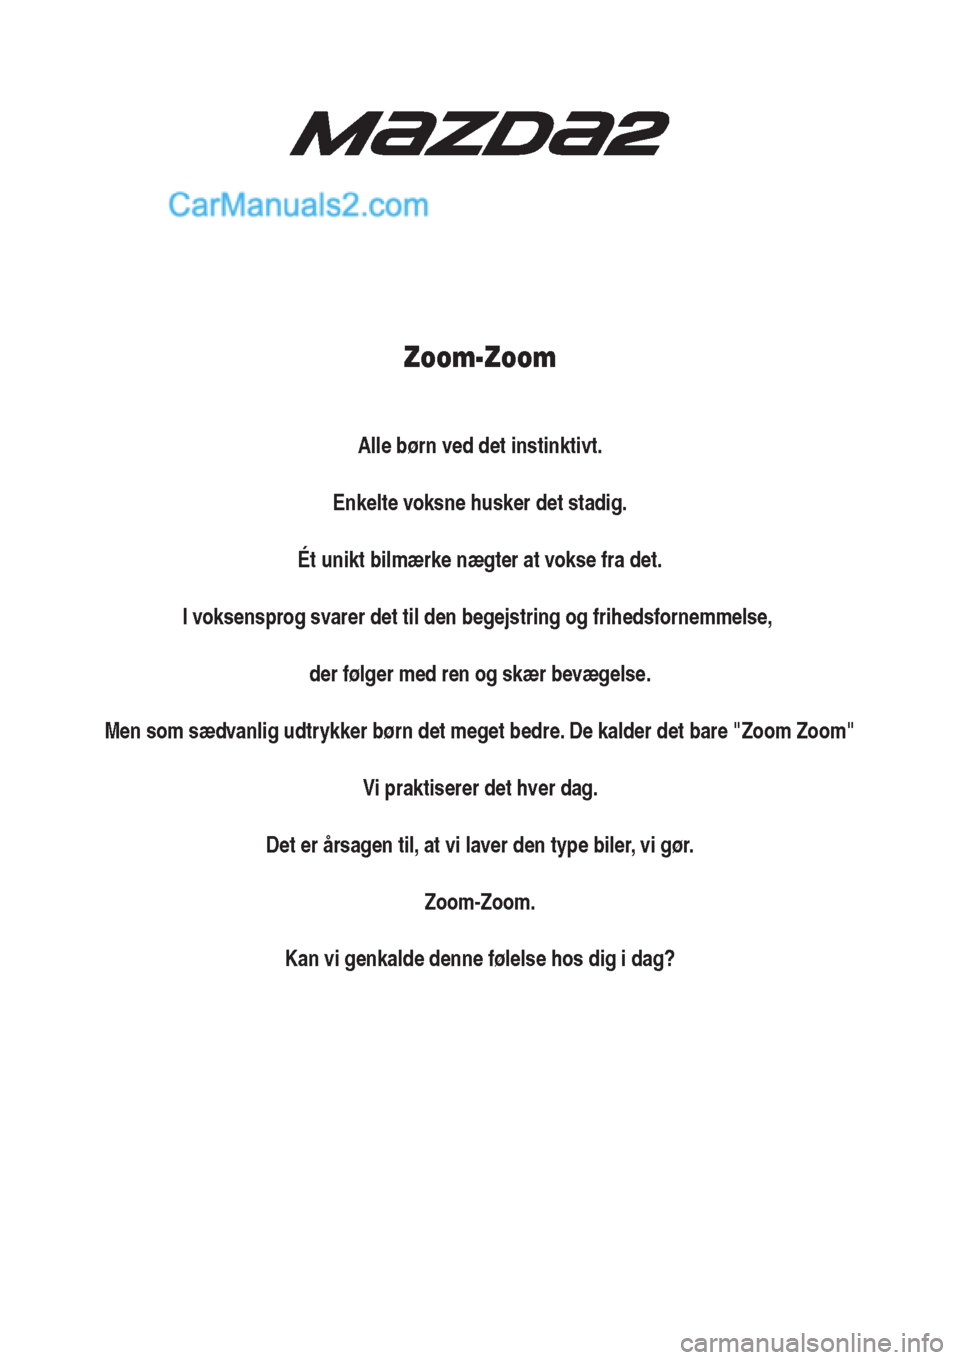 MAZDA MODEL 2 2017  Instruktionsbog (in Danish) Zoom-Zoom
Alle børn ved det instinktivt.
Enkelte voksne husker det stadig.
Ét unikt bilmærke nægter at vokse fra det.
I voksensprog svarer det til den begejstring og frihedsfornemmelse, 
der følg